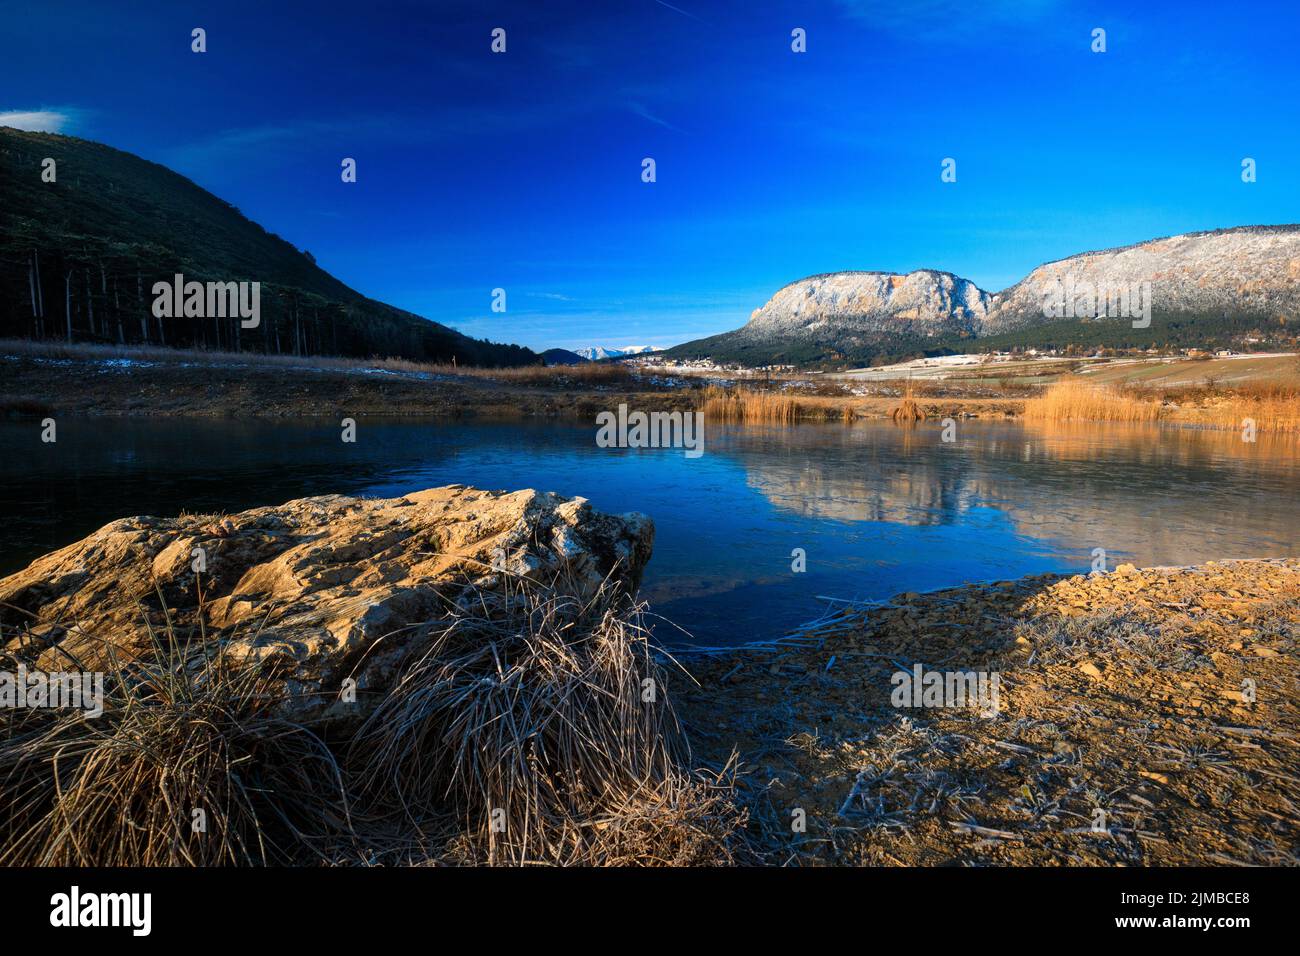 Magnifique paysage avec de hautes roches avec des pics illuminés, des pierres dans le lac de montagne, reflet, ciel bleu et lumière du soleil jaune dedans Banque D'Images